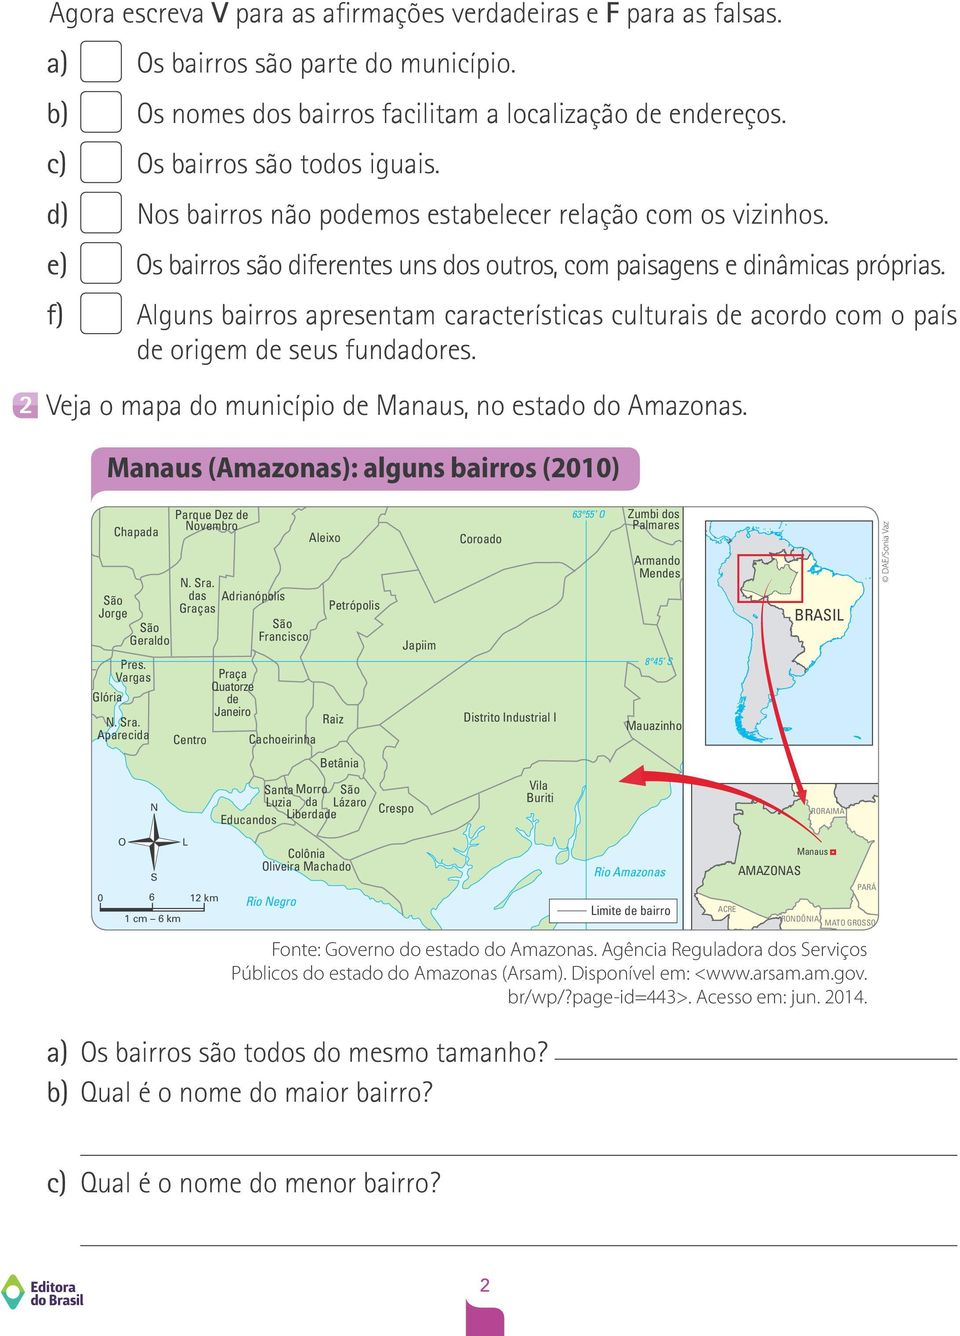 f) Alguns bairros apresentam características culturais de acordo com o país de origem de seus fundadores. 2 Veja o mapa do município de Manaus, no estado do Amazonas.